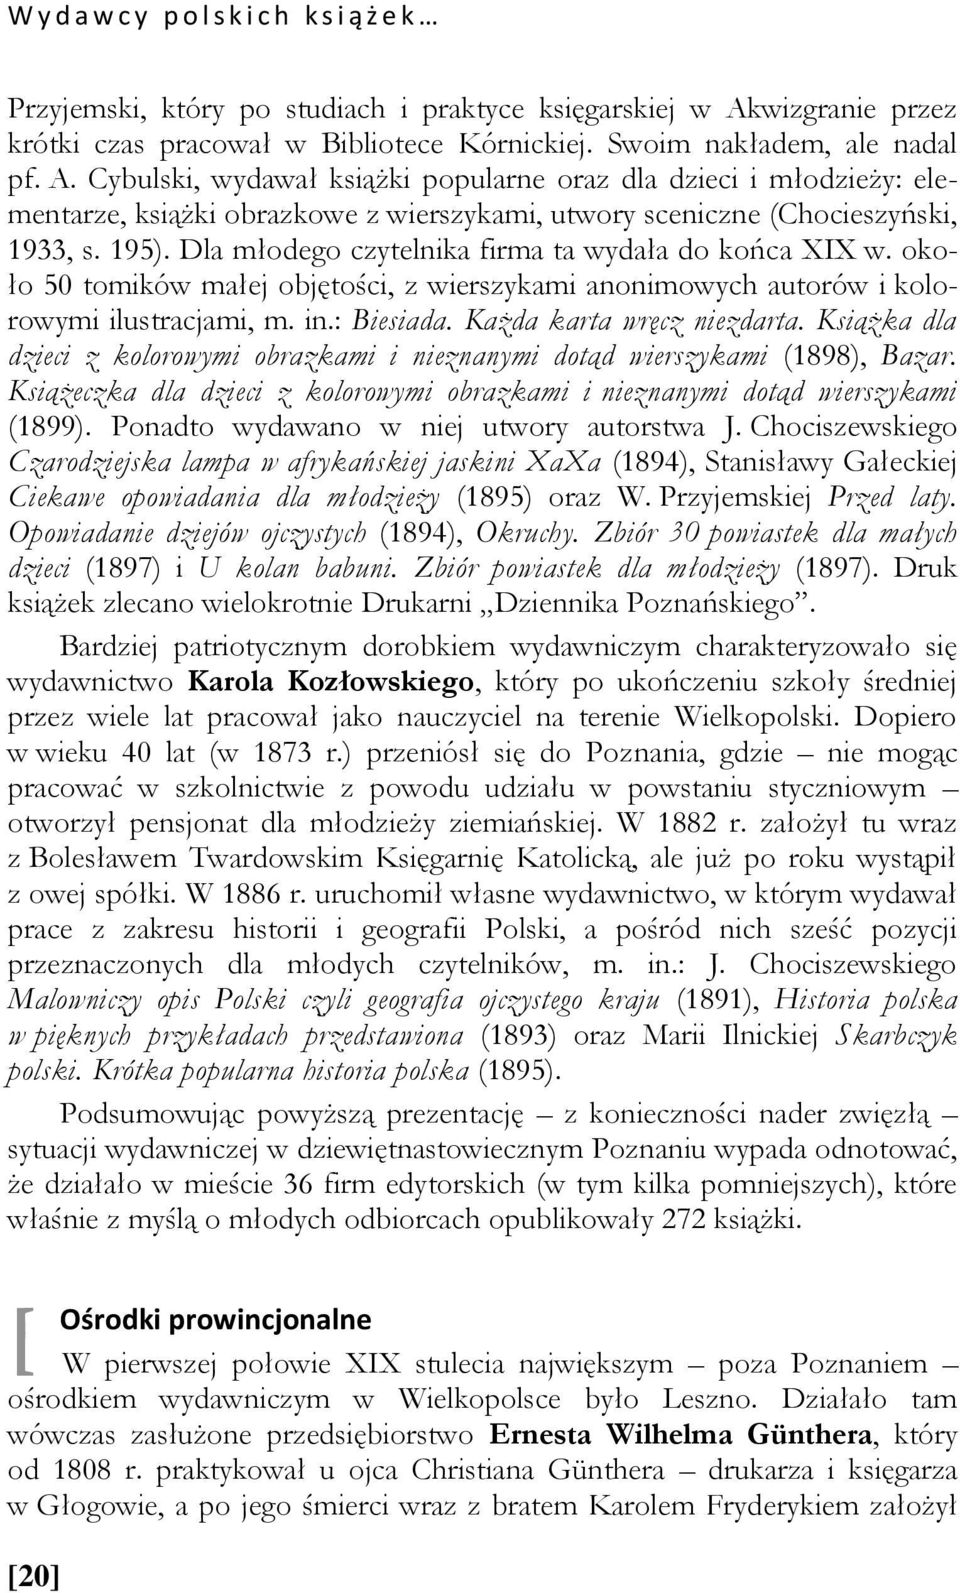 Cybulski, wydawał książki popularne oraz dla dzieci i młodzieży: elementarze, książki obrazkowe z wierszykami, utwory sceniczne (Chocieszyński, 1933, s. 195).